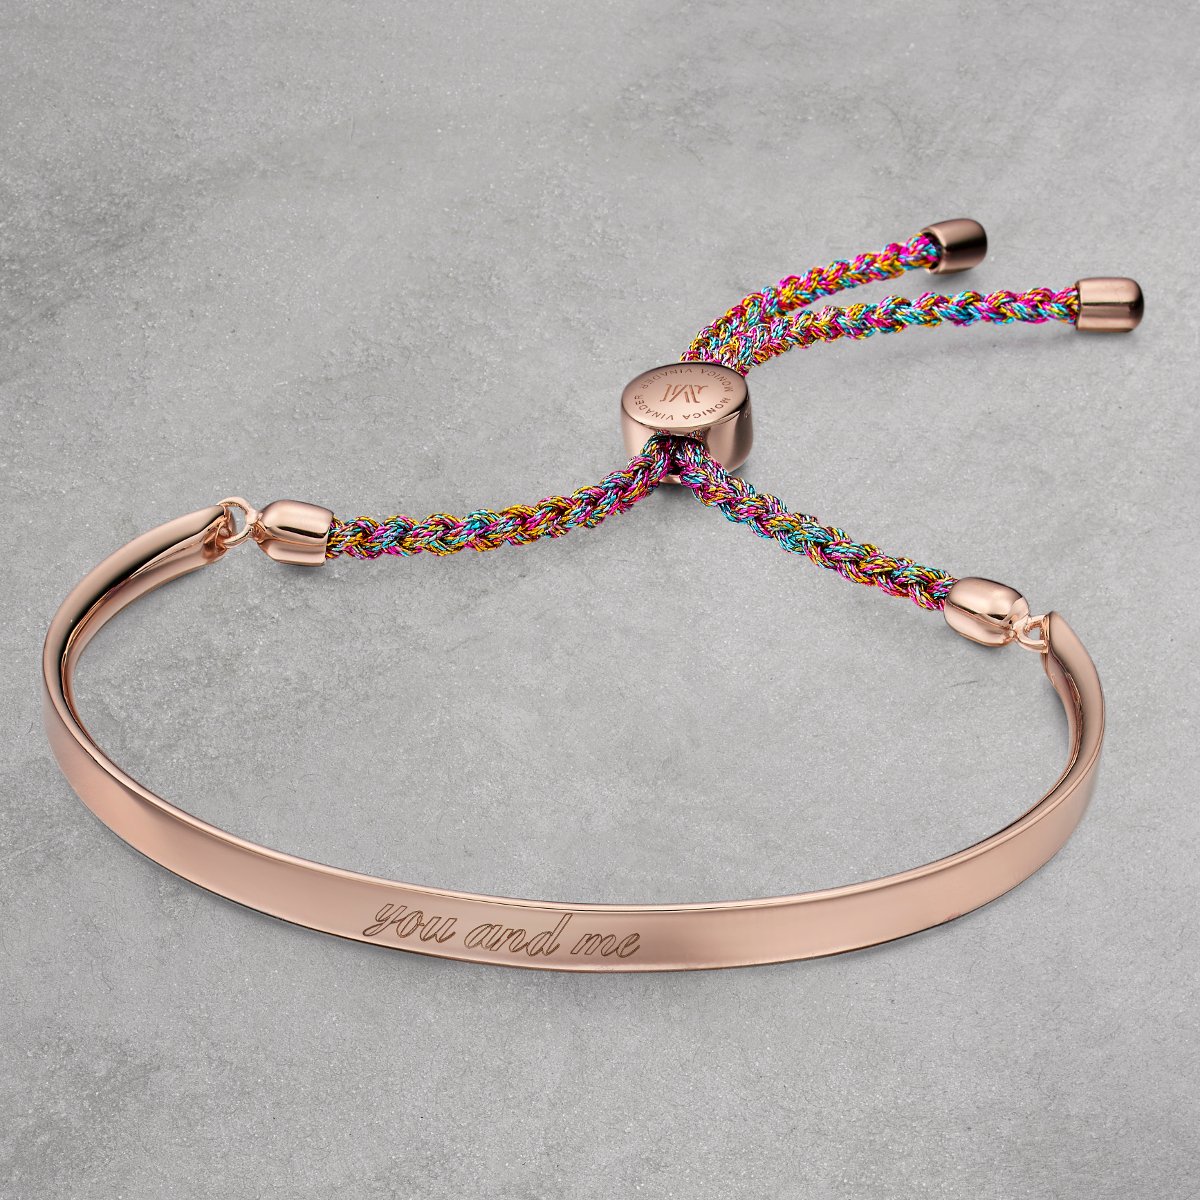 Monica Vinader Linear Friendship Bracelet, Red/Gold at John Lewis & Partners